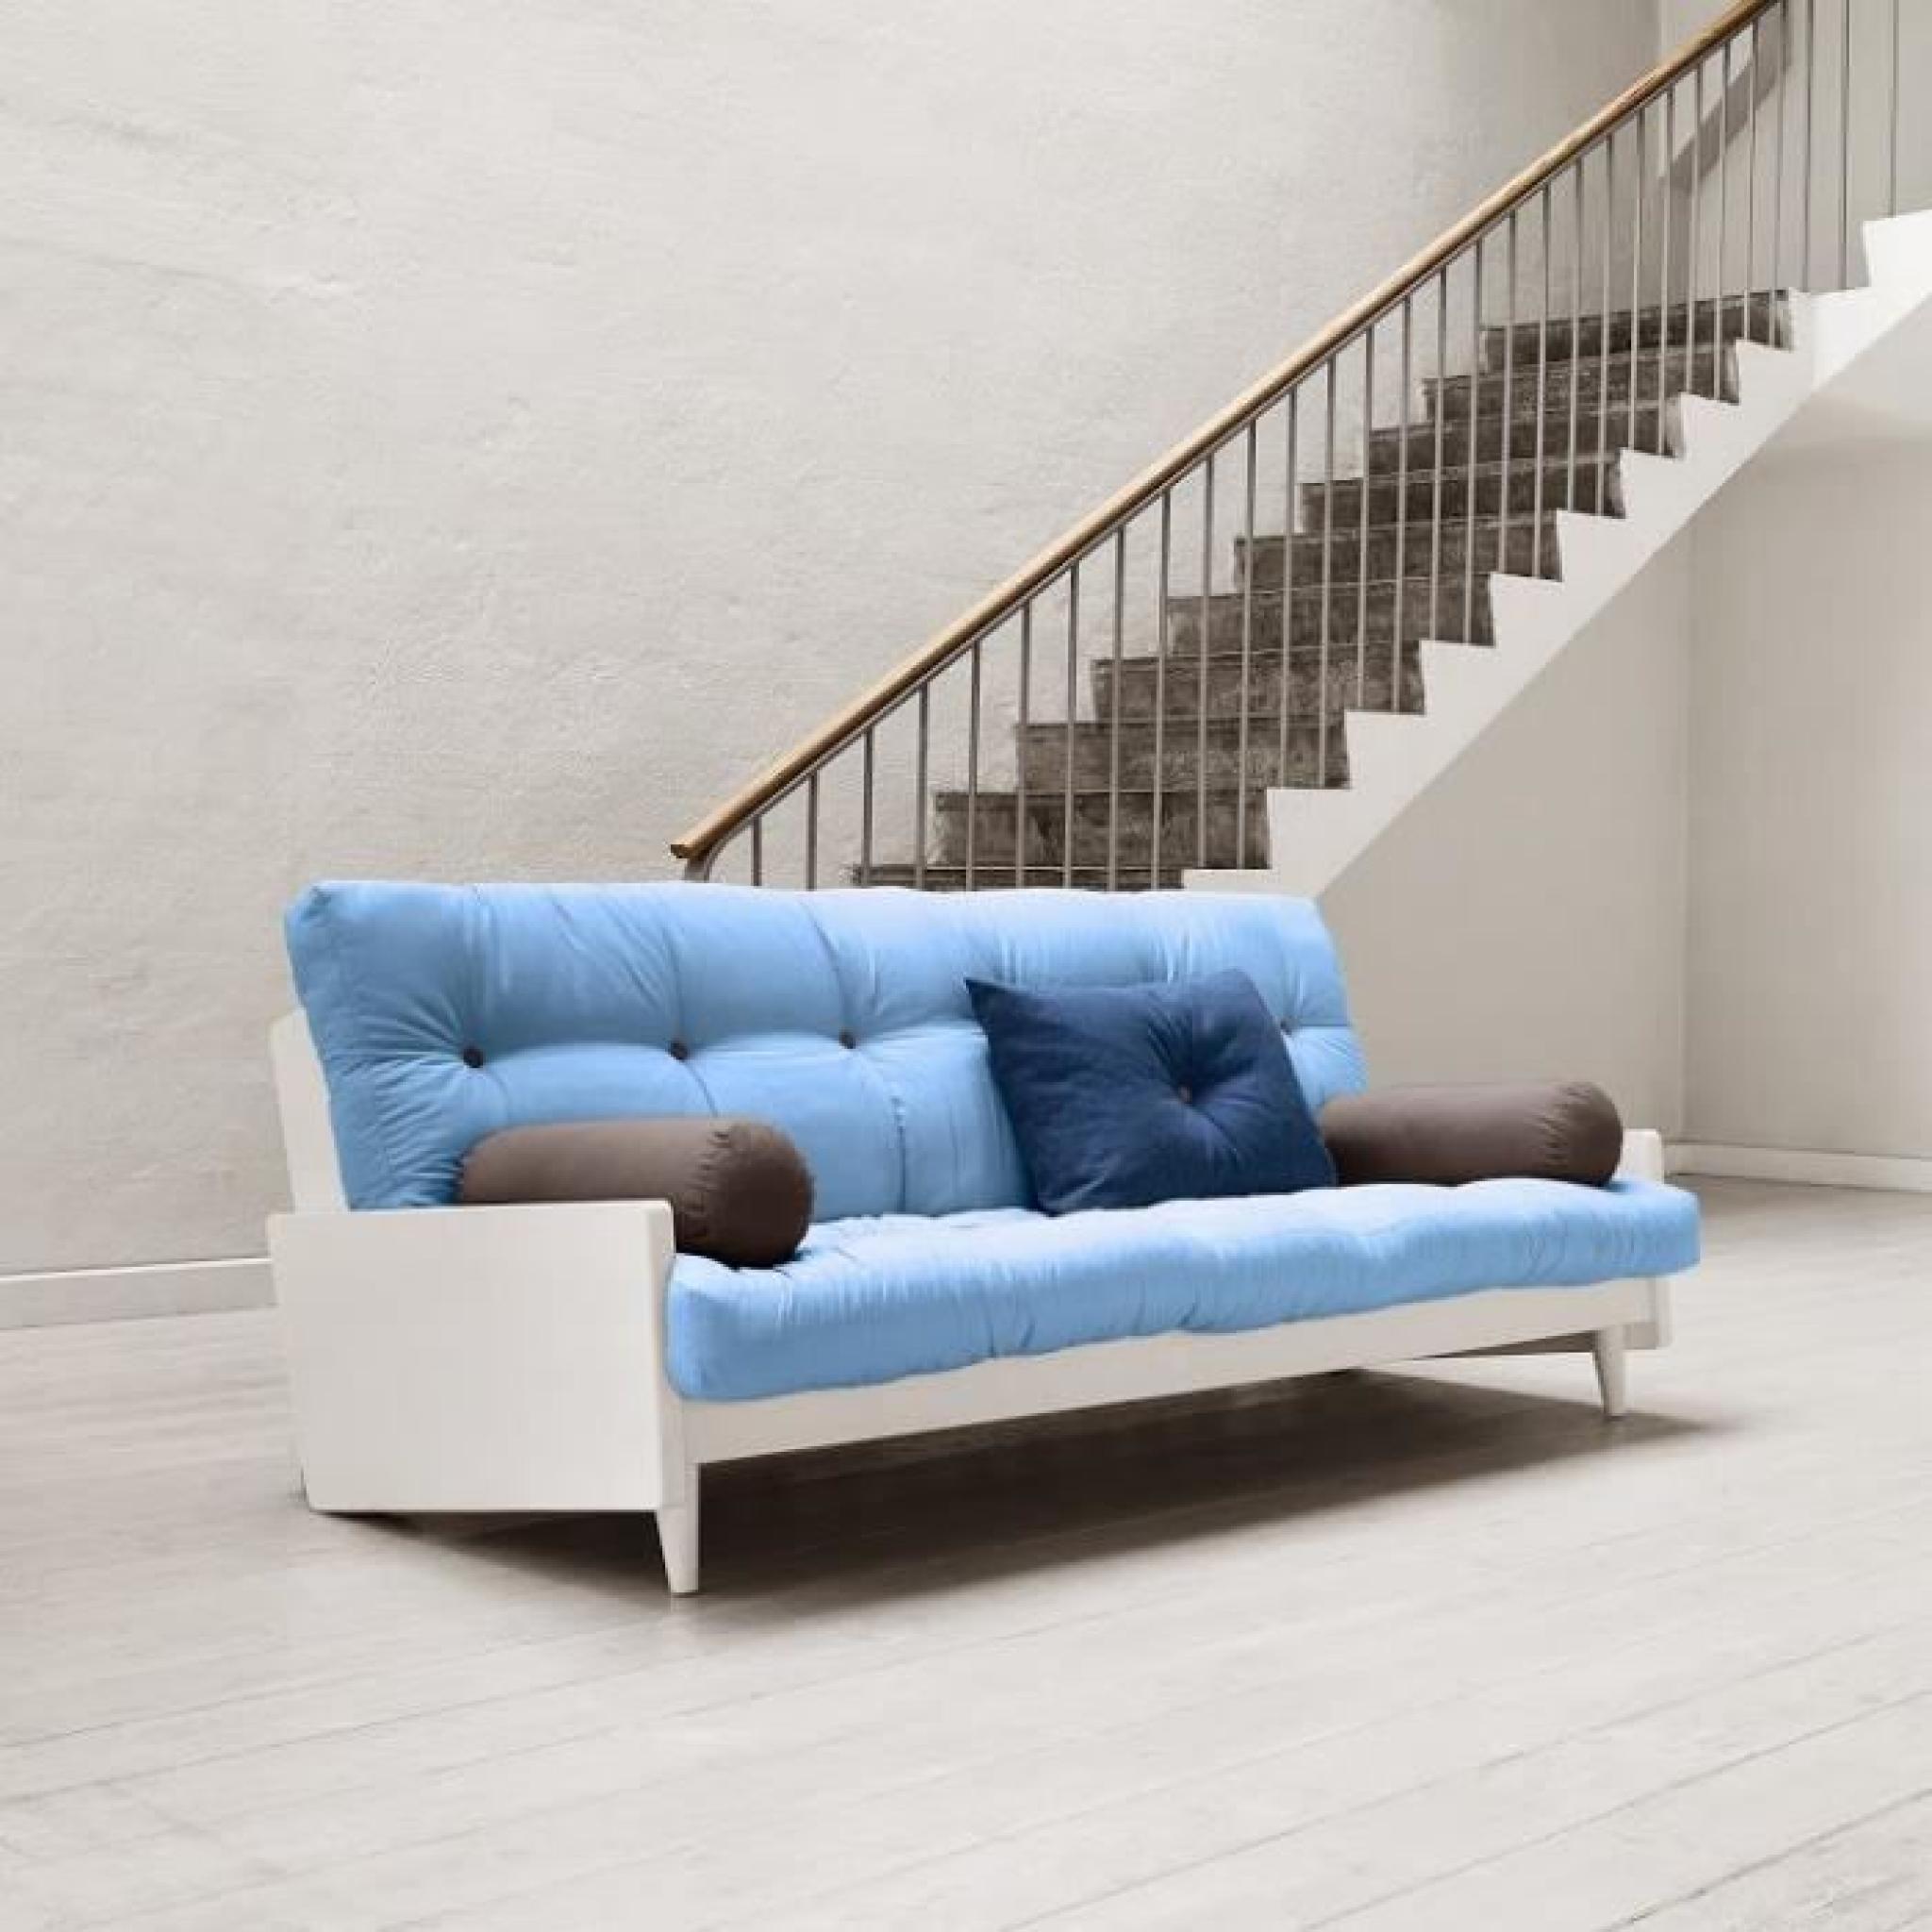 Canapé blanc 3/4 places convertible INDIE futon bleu celeste couchage 130*190cm